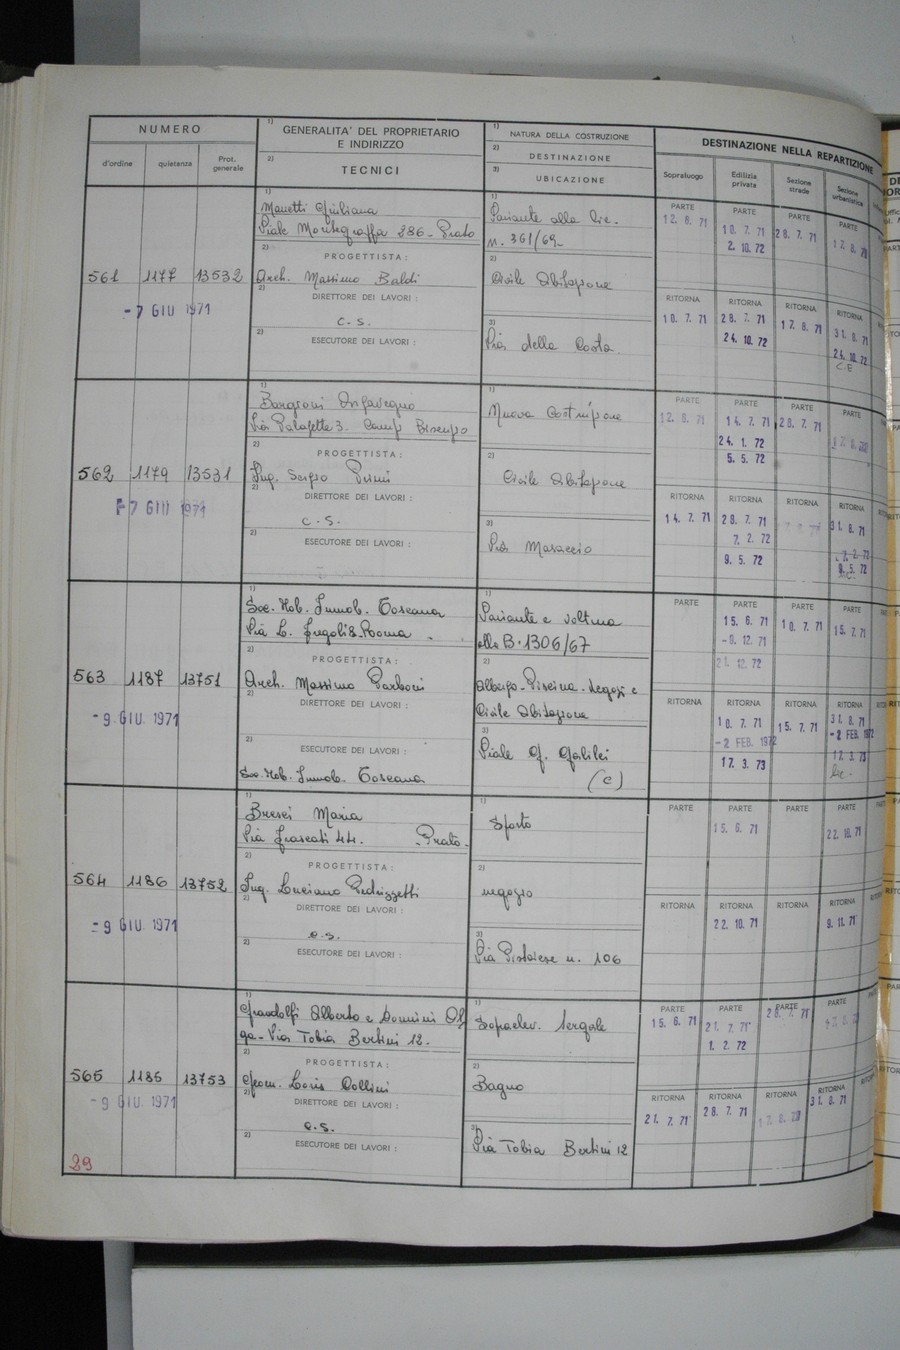 Foto del lato sinistro del registro con i dati della pratica 563/1971